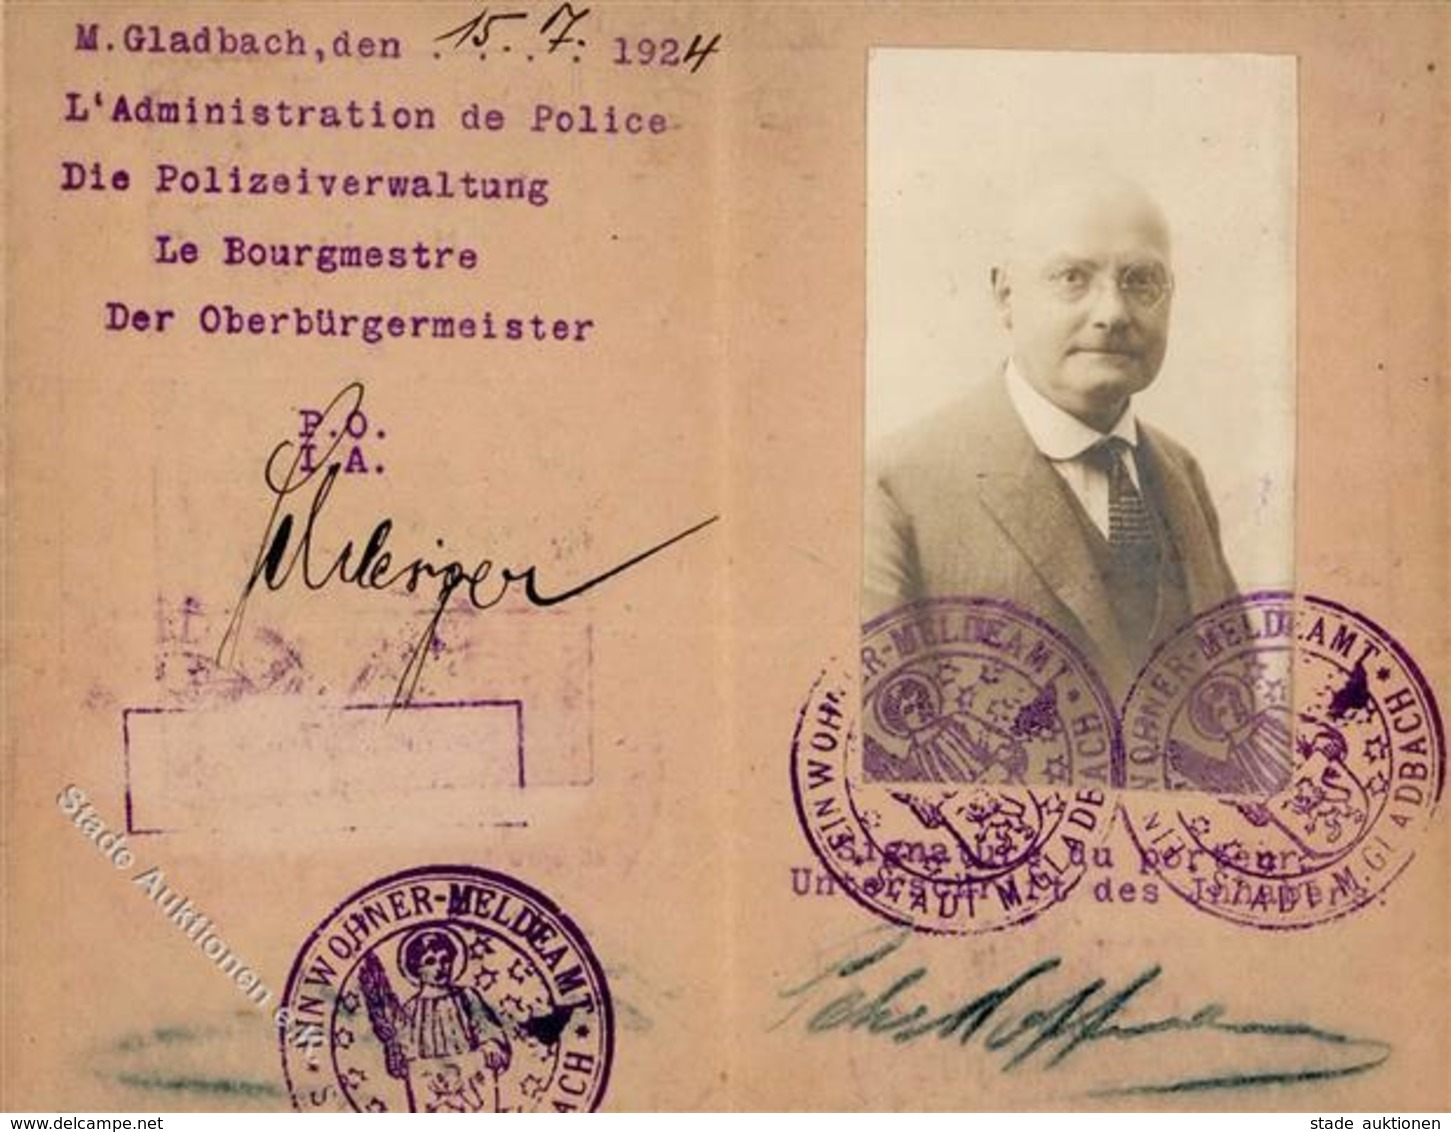 Zwischenkriegszeit Mönchengladbach (4050) Ausweis Deutsch-Französisch 1924 II (fleckig) - Geschichte